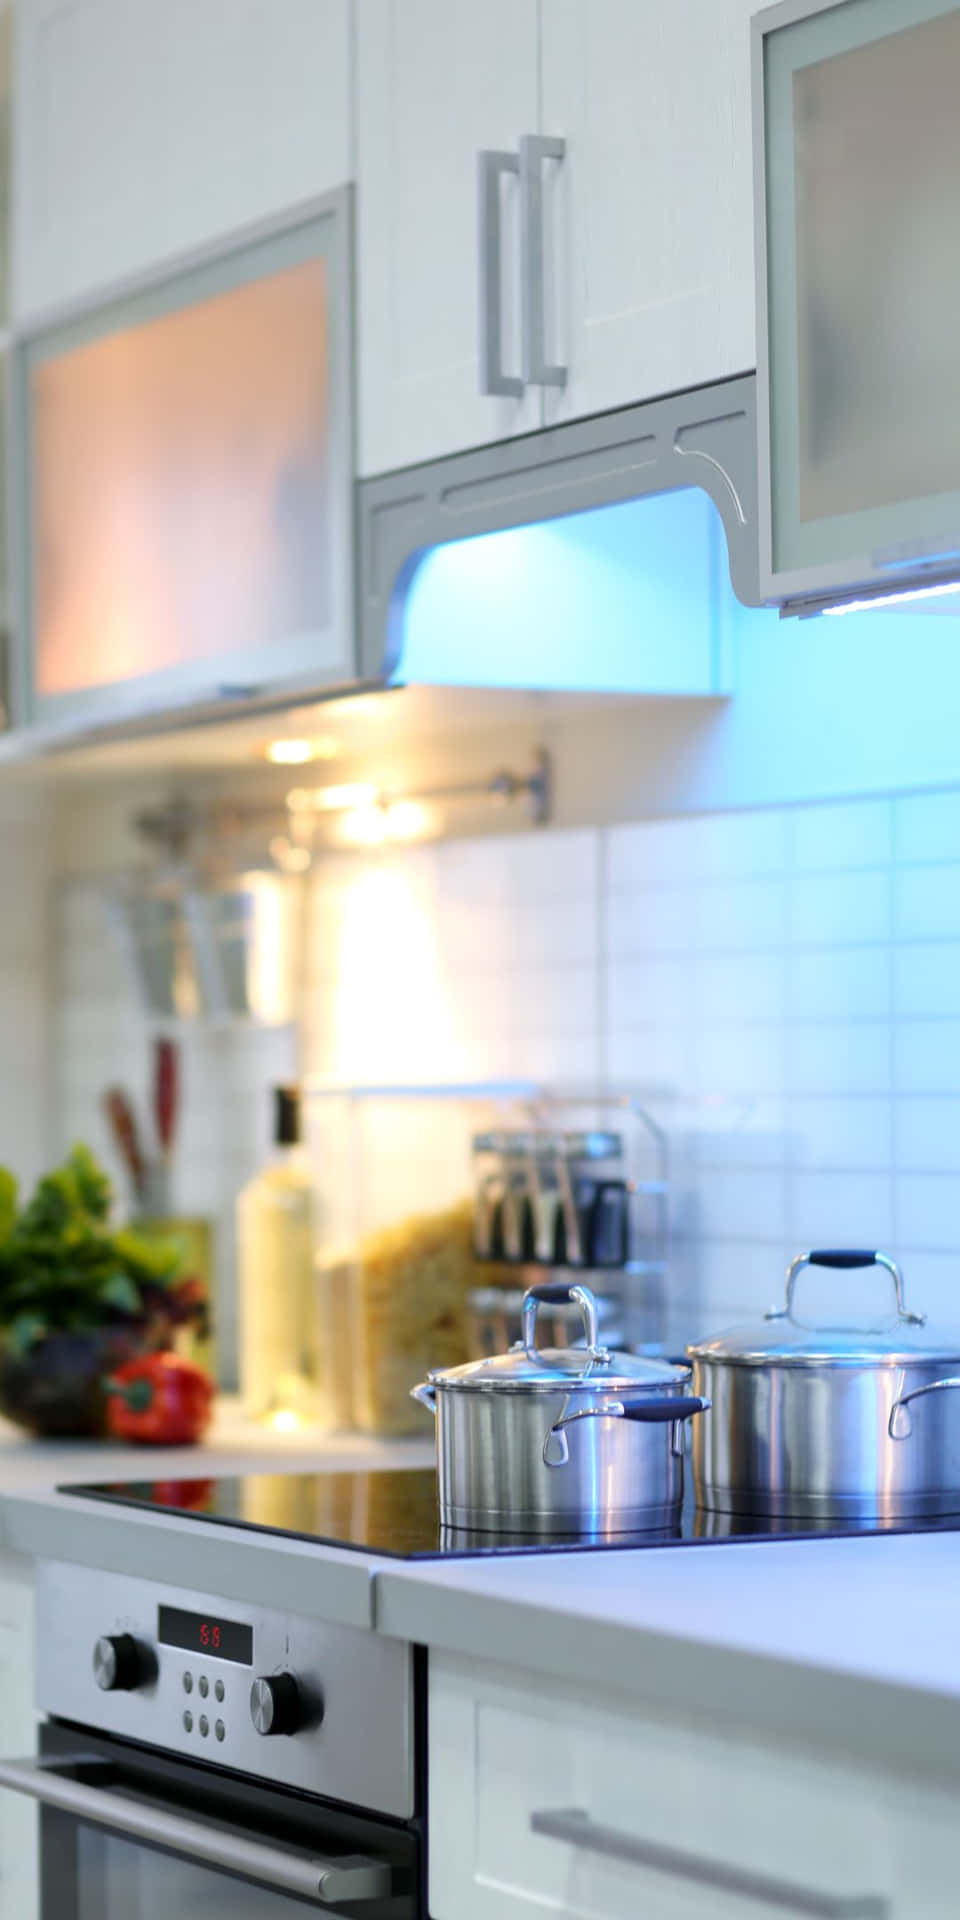 Unascena Di Cucina Con Lo Smartphone Google Pixel 3